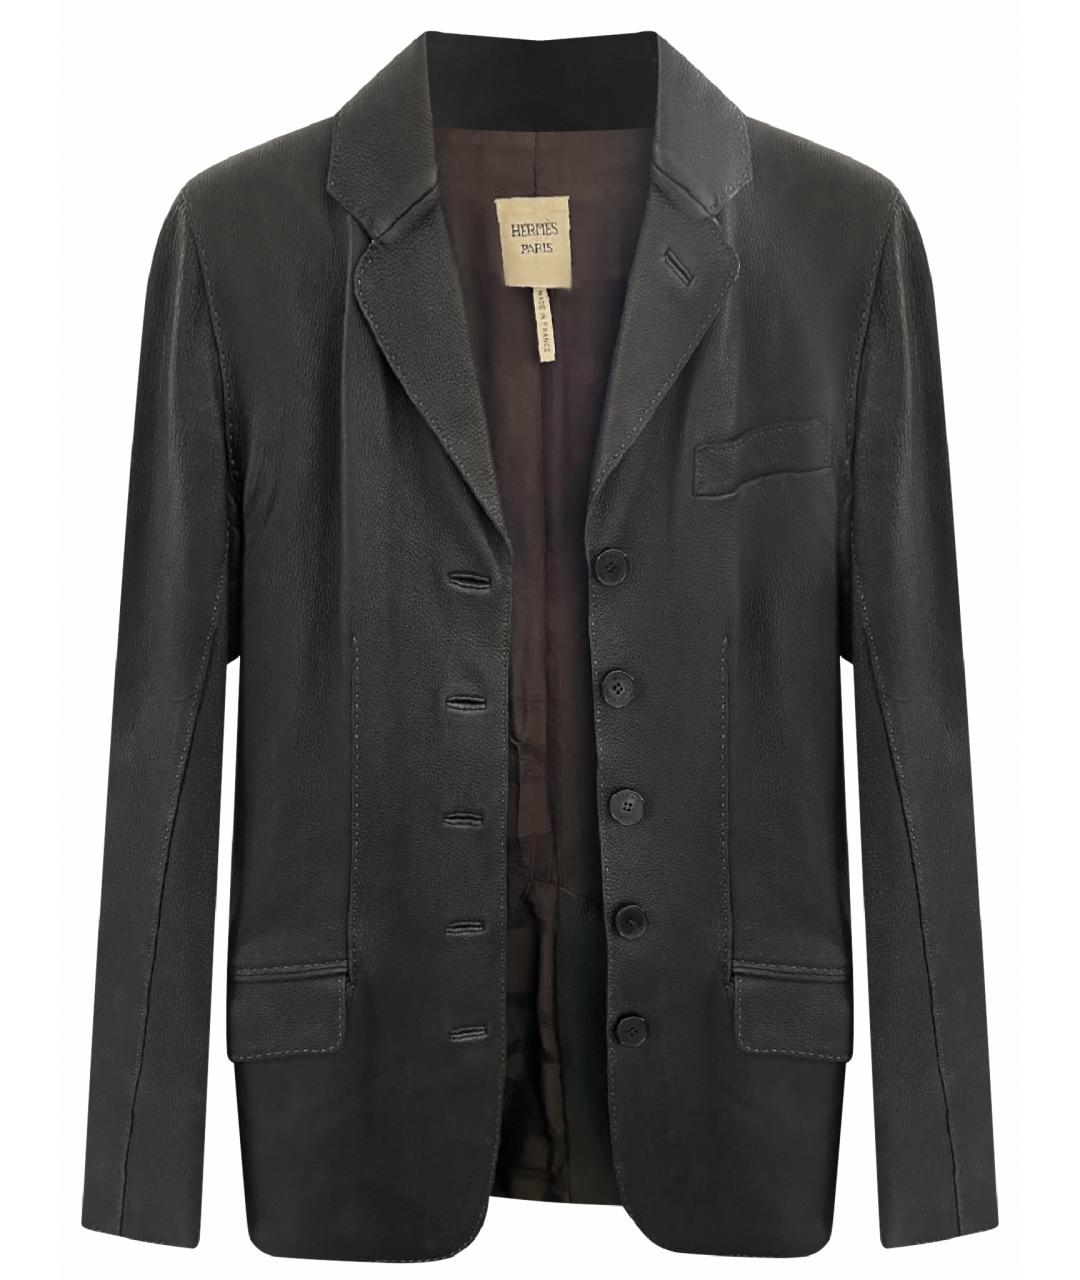 HERMES PRE-OWNED Коричневый кожаный жакет/пиджак, фото 1